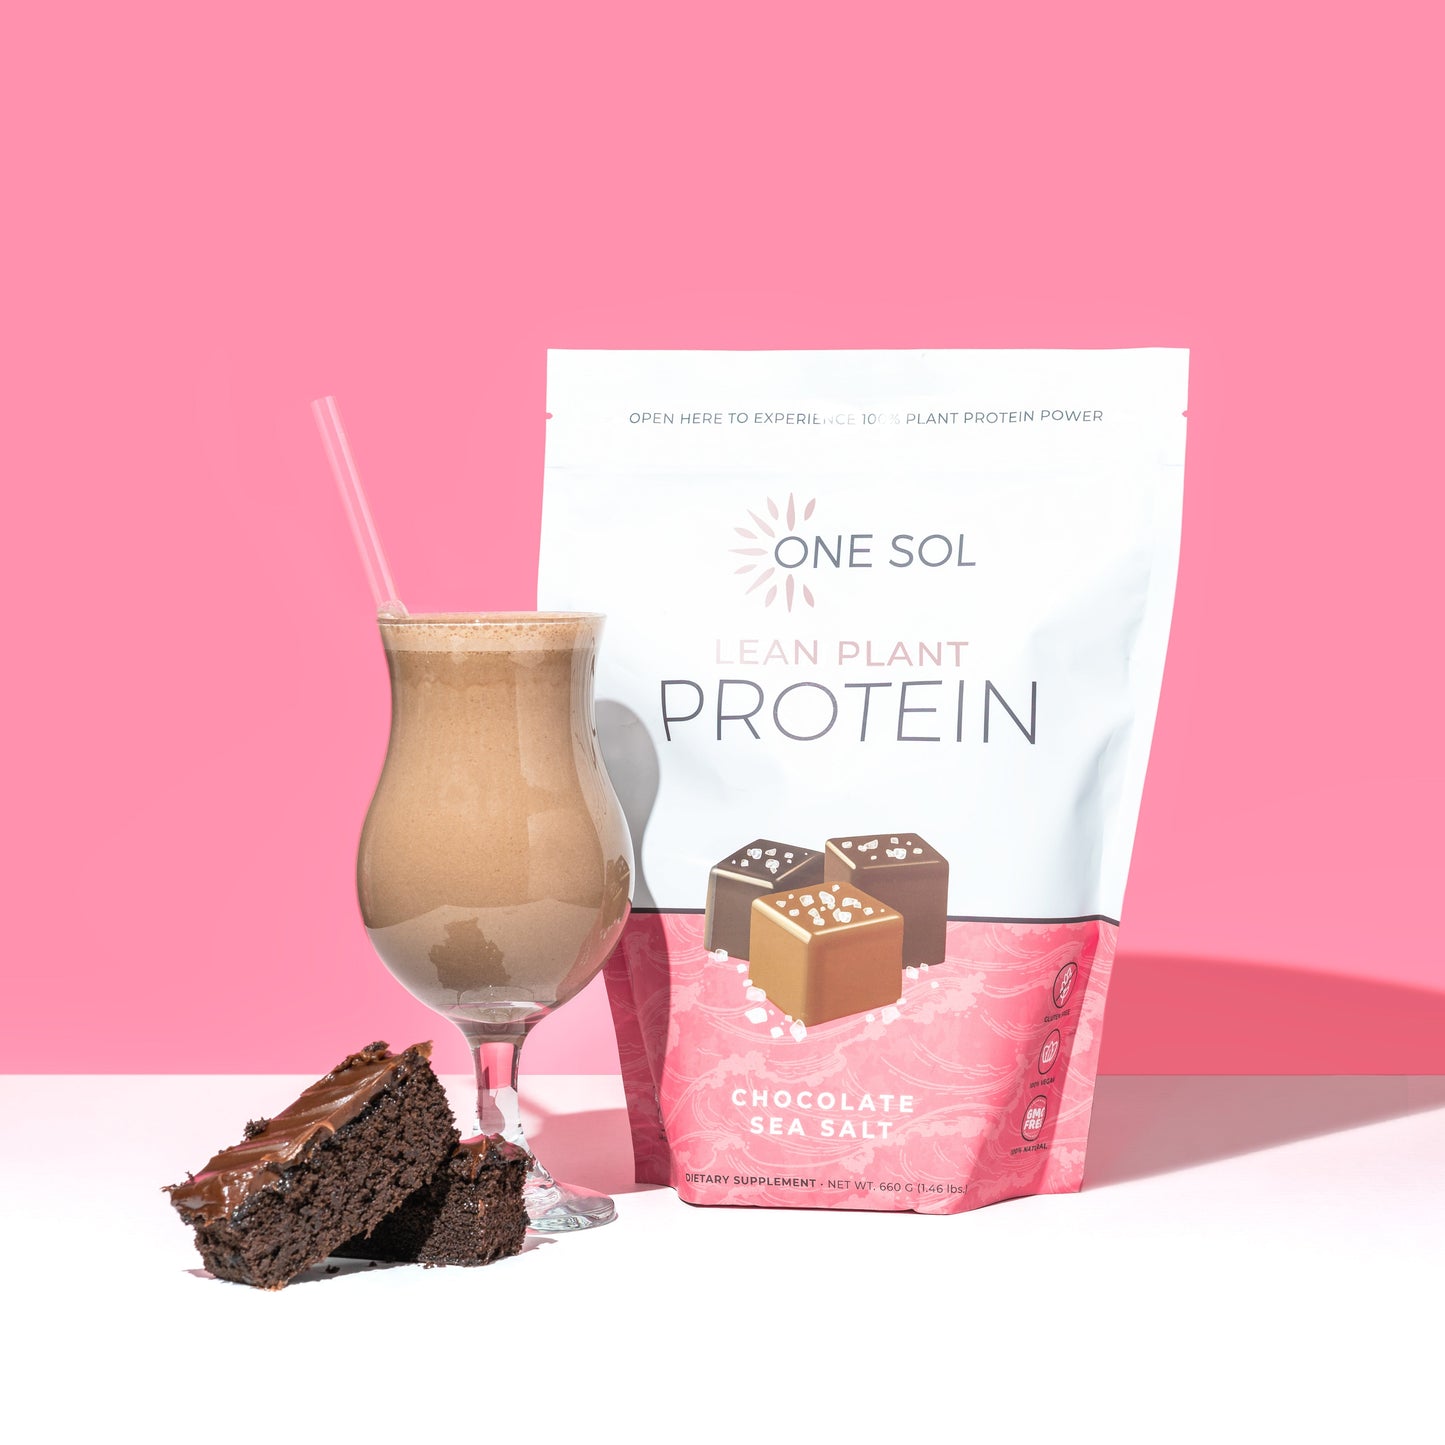  One Sol Lean Plant Protein Powder Chocolate Sea Salt